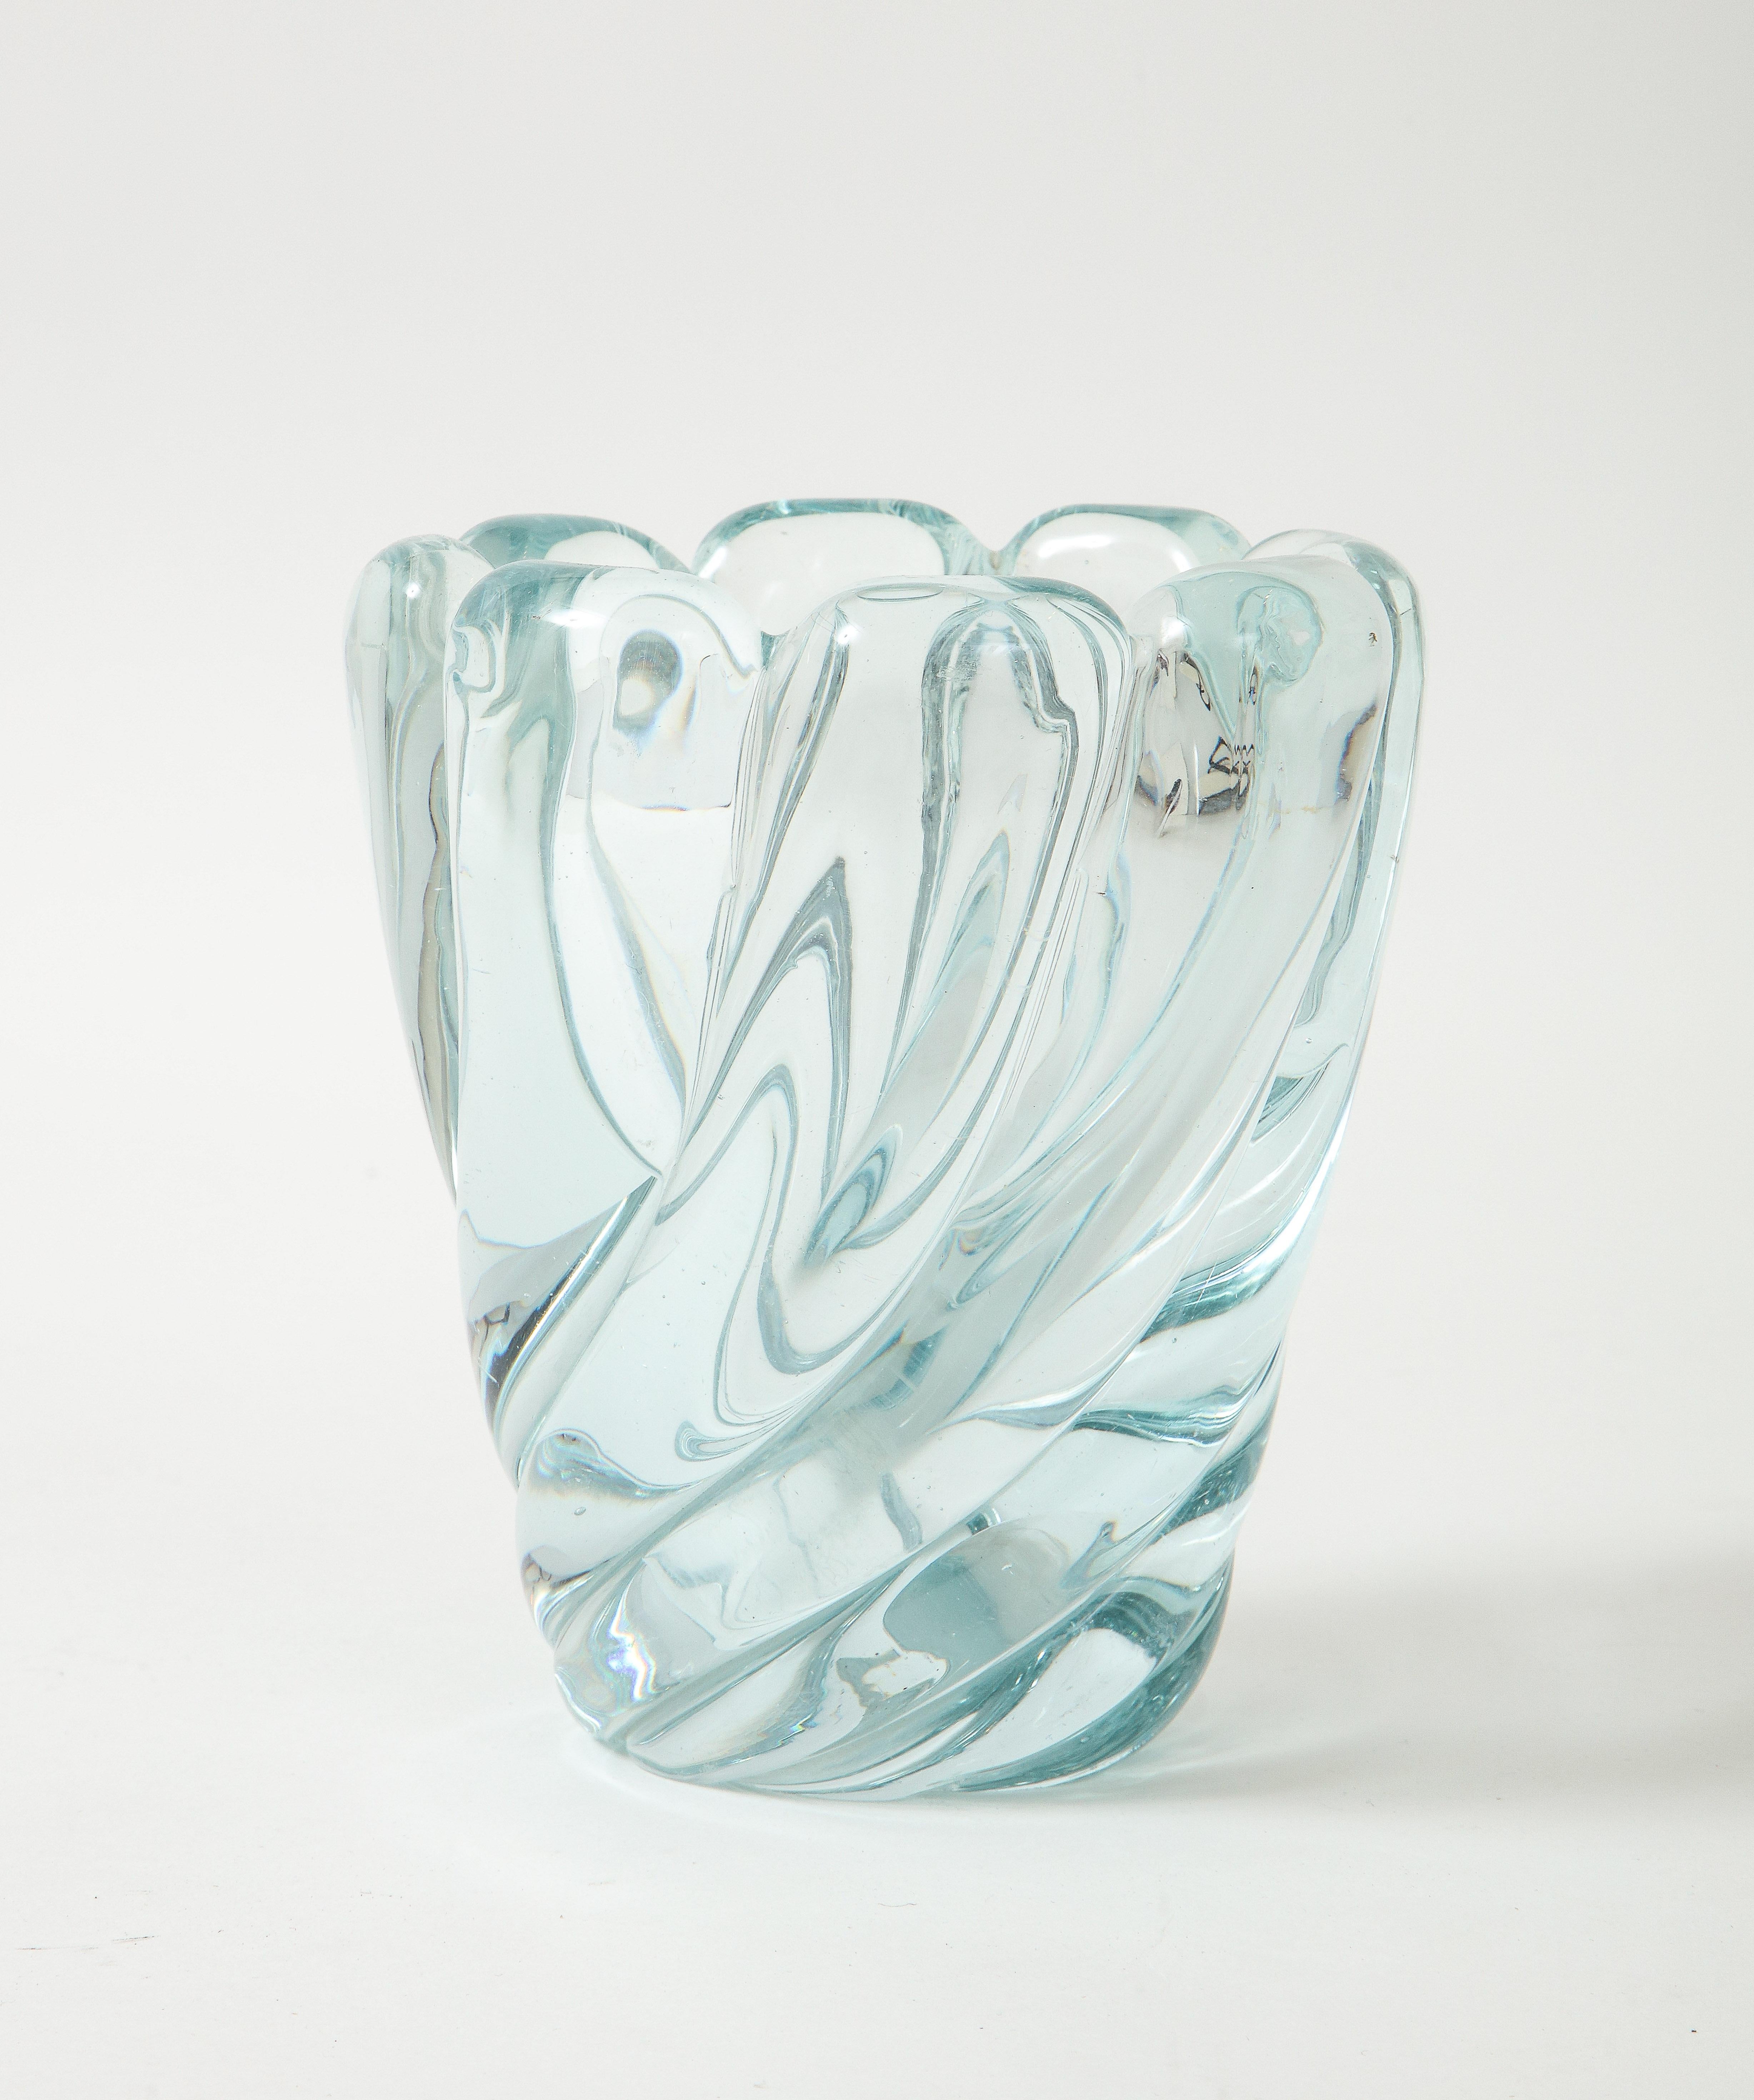 Seguso Vetri d'Arte elegante Glasvase Modell 7609, Italien, um 1942. Diese Vase aus mundgeblasenem Muranoglas wurde mit der Cordonato-Ritorto-Technik hergestellt, bei der geripptes Glas in einem subtilen, schönen Hellblau- oder Aquaton-Ton sanft